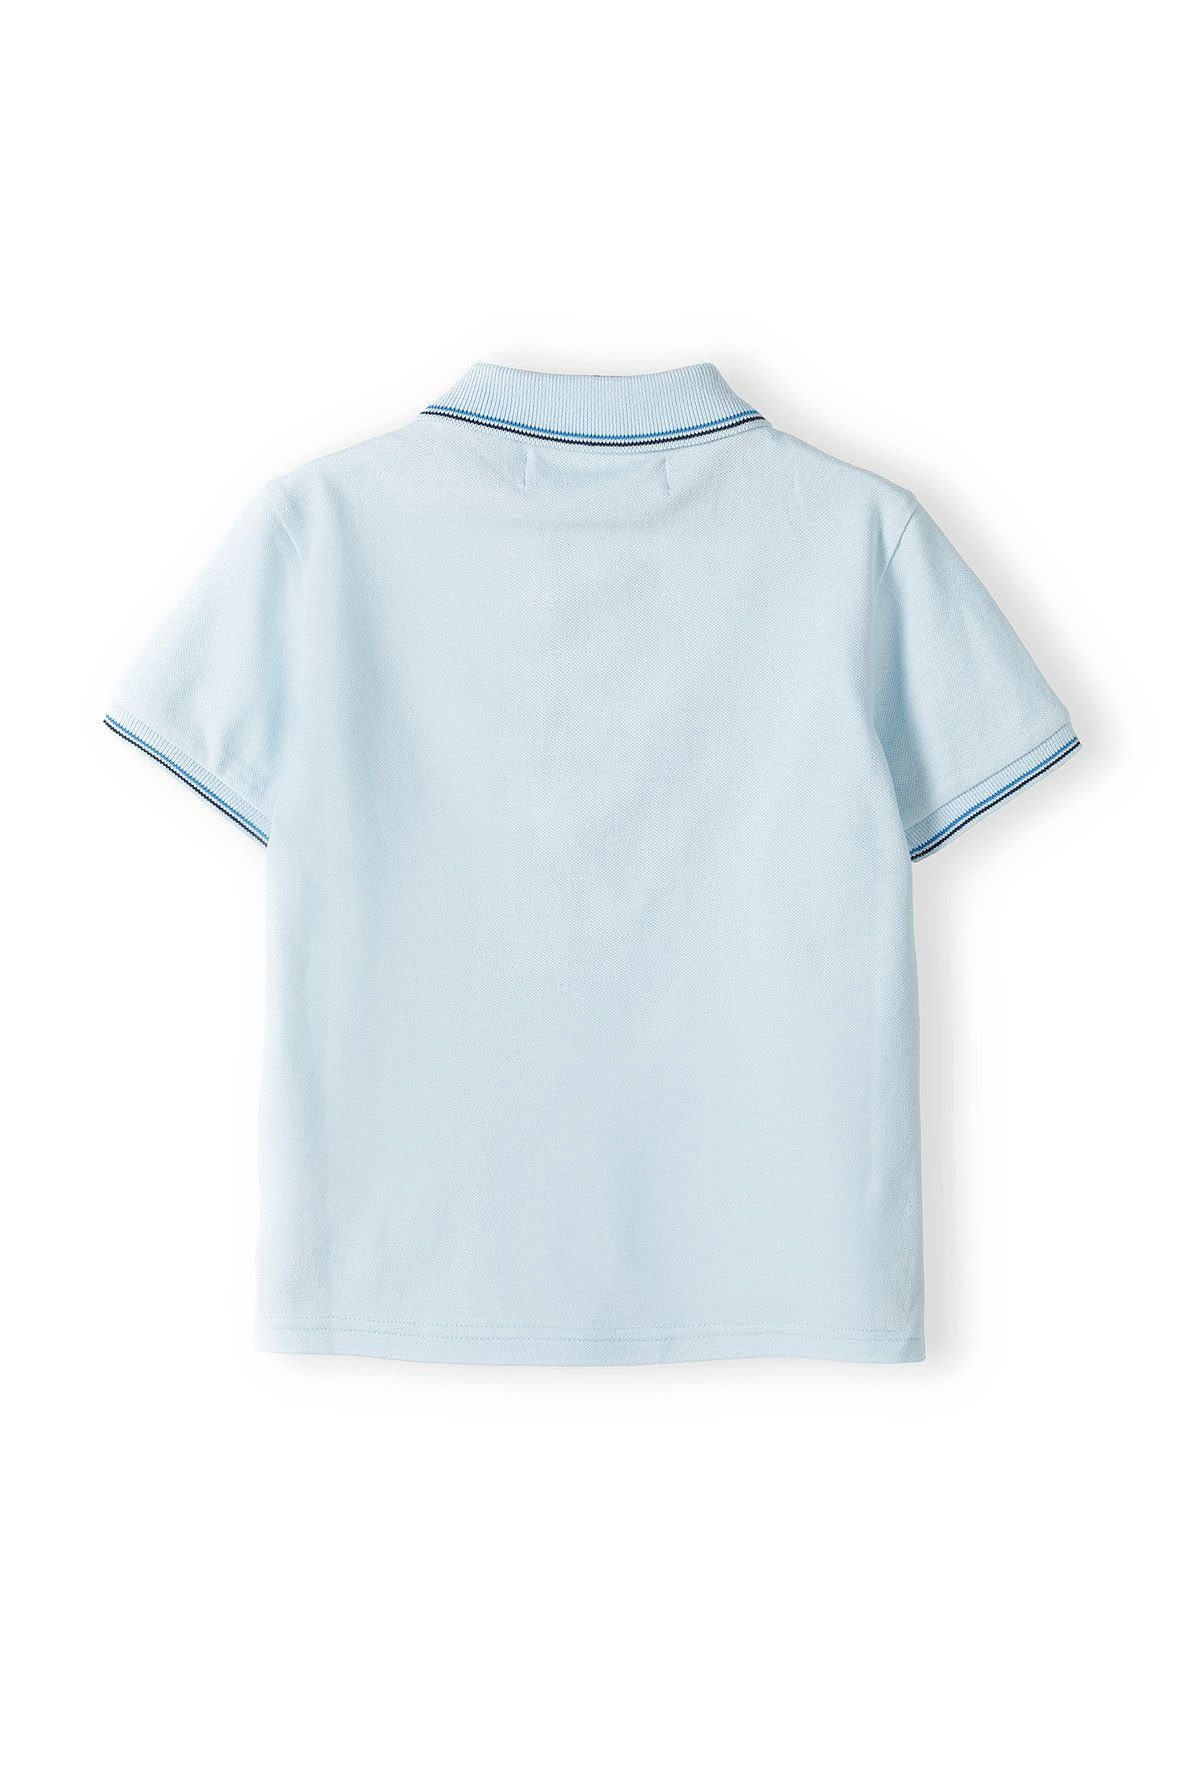 MINOTI Polohemd Hellblau (12m-14y) Poloshirt